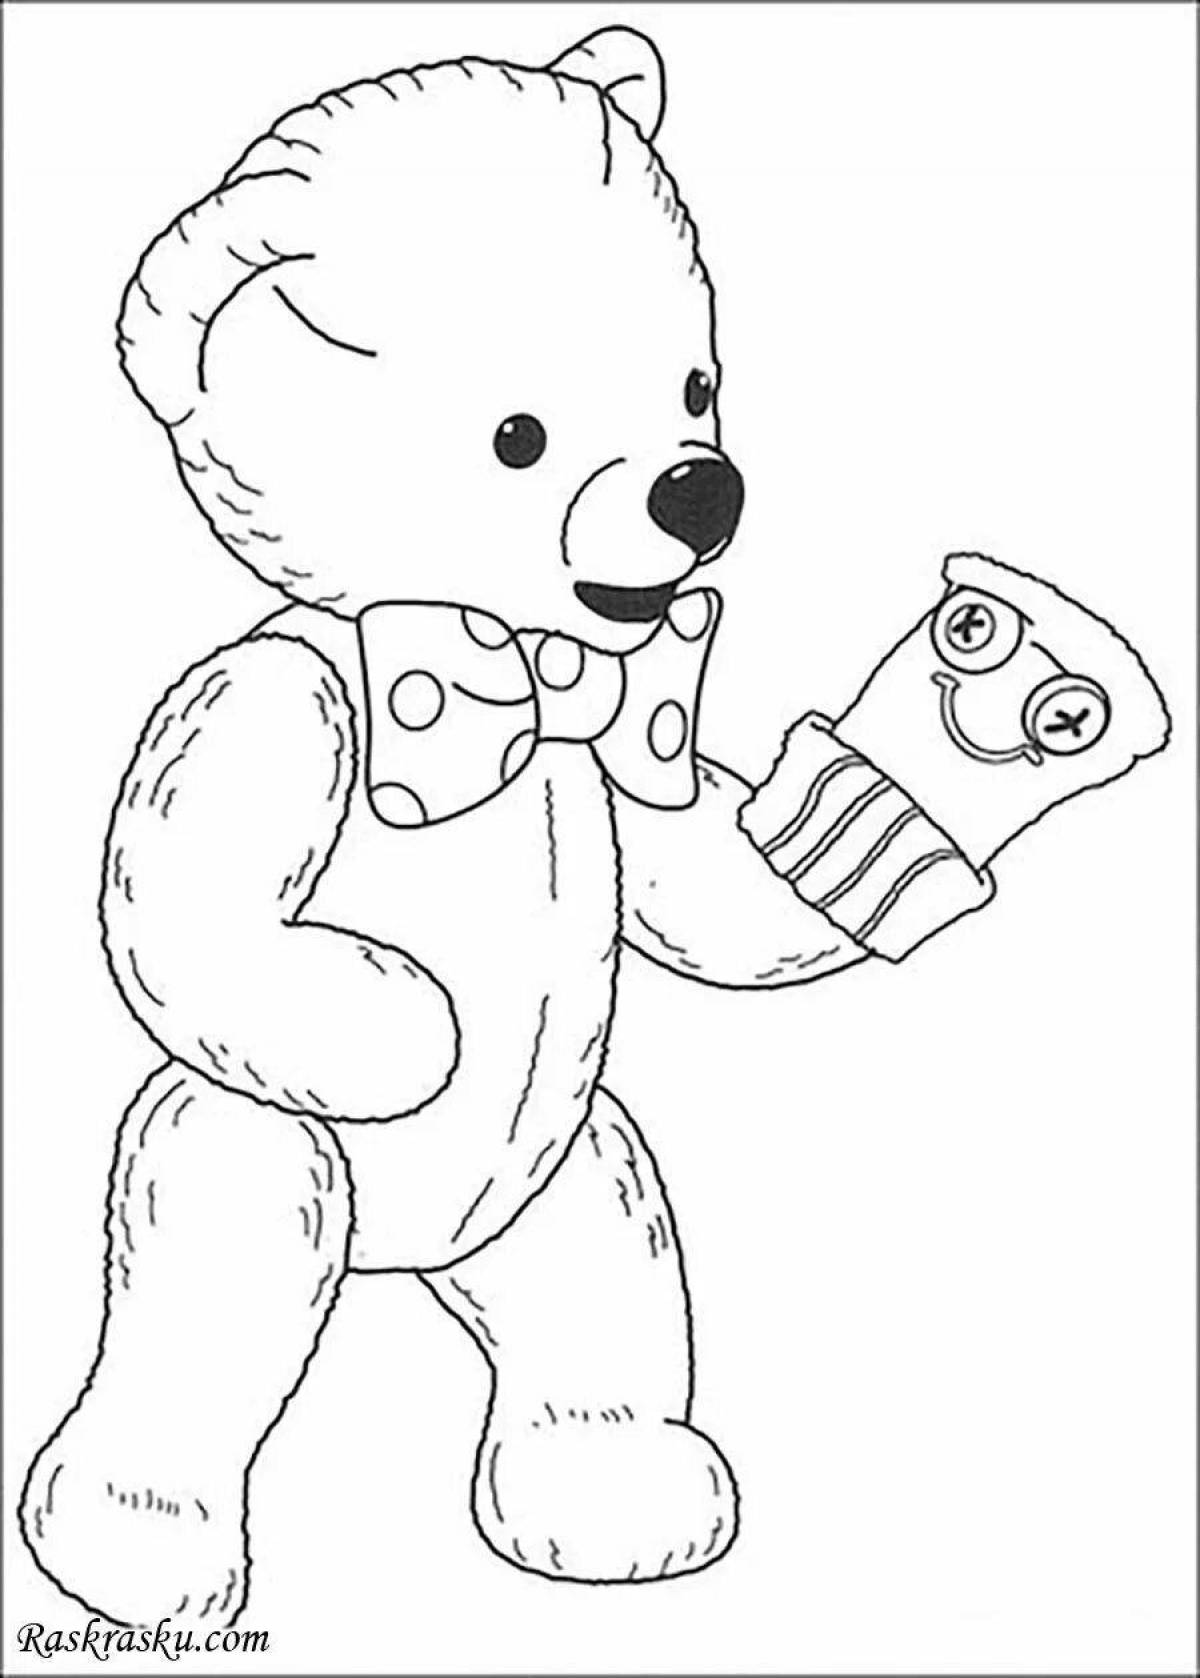 Распечатка медведя. Раскраска "мишки". Раскраска. Медвежонок. Медвежонок раскраска для детей. Медведь раскраска для детей.